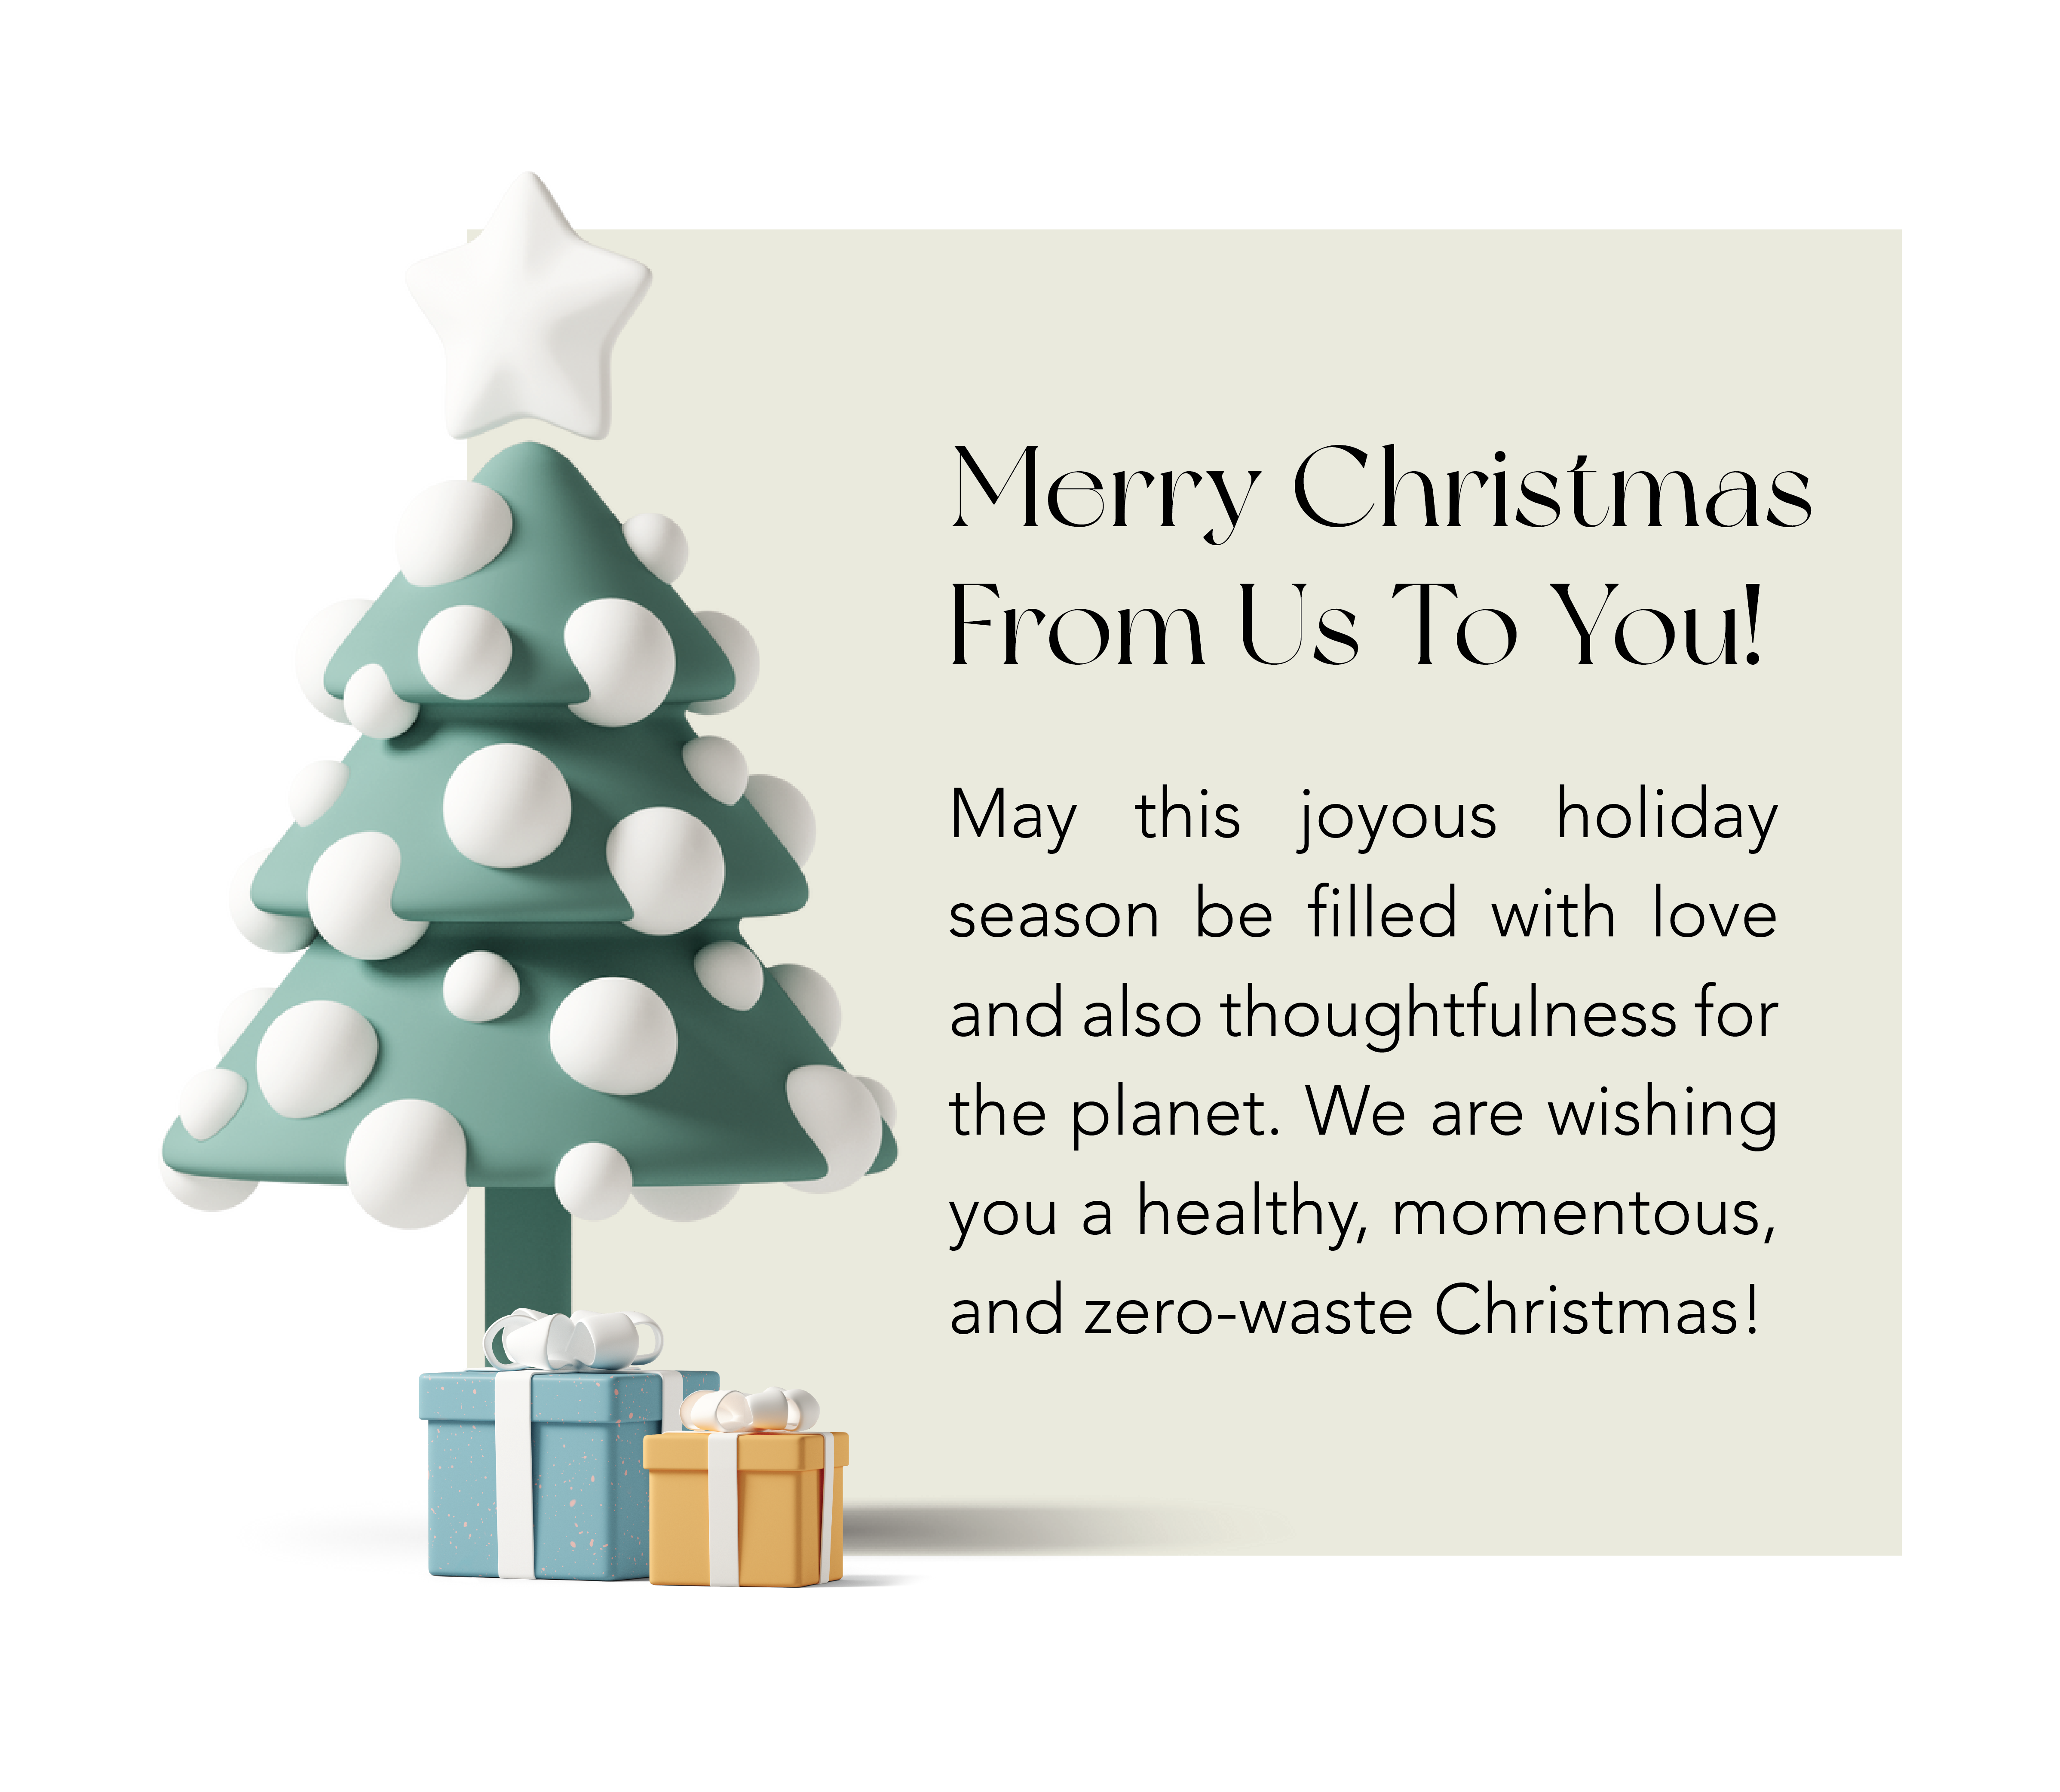 merry Christmas, xmas, xmas tree, Christmas wish, holidays, holiday wishes, holiday wish, merry Christmas, happy holidays